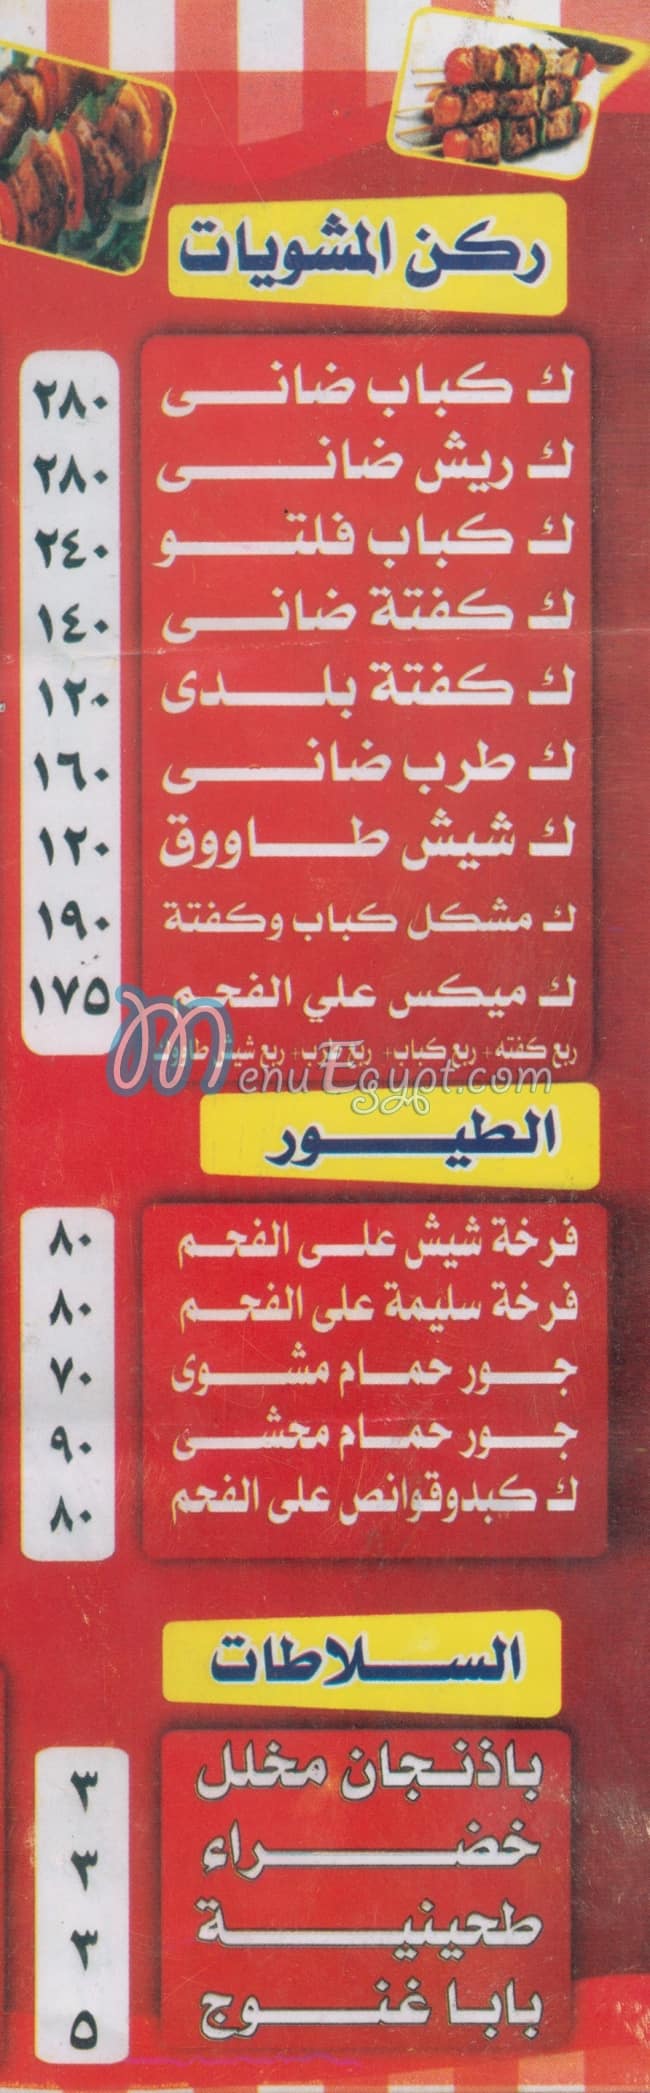 El Akeel Restaurant menu